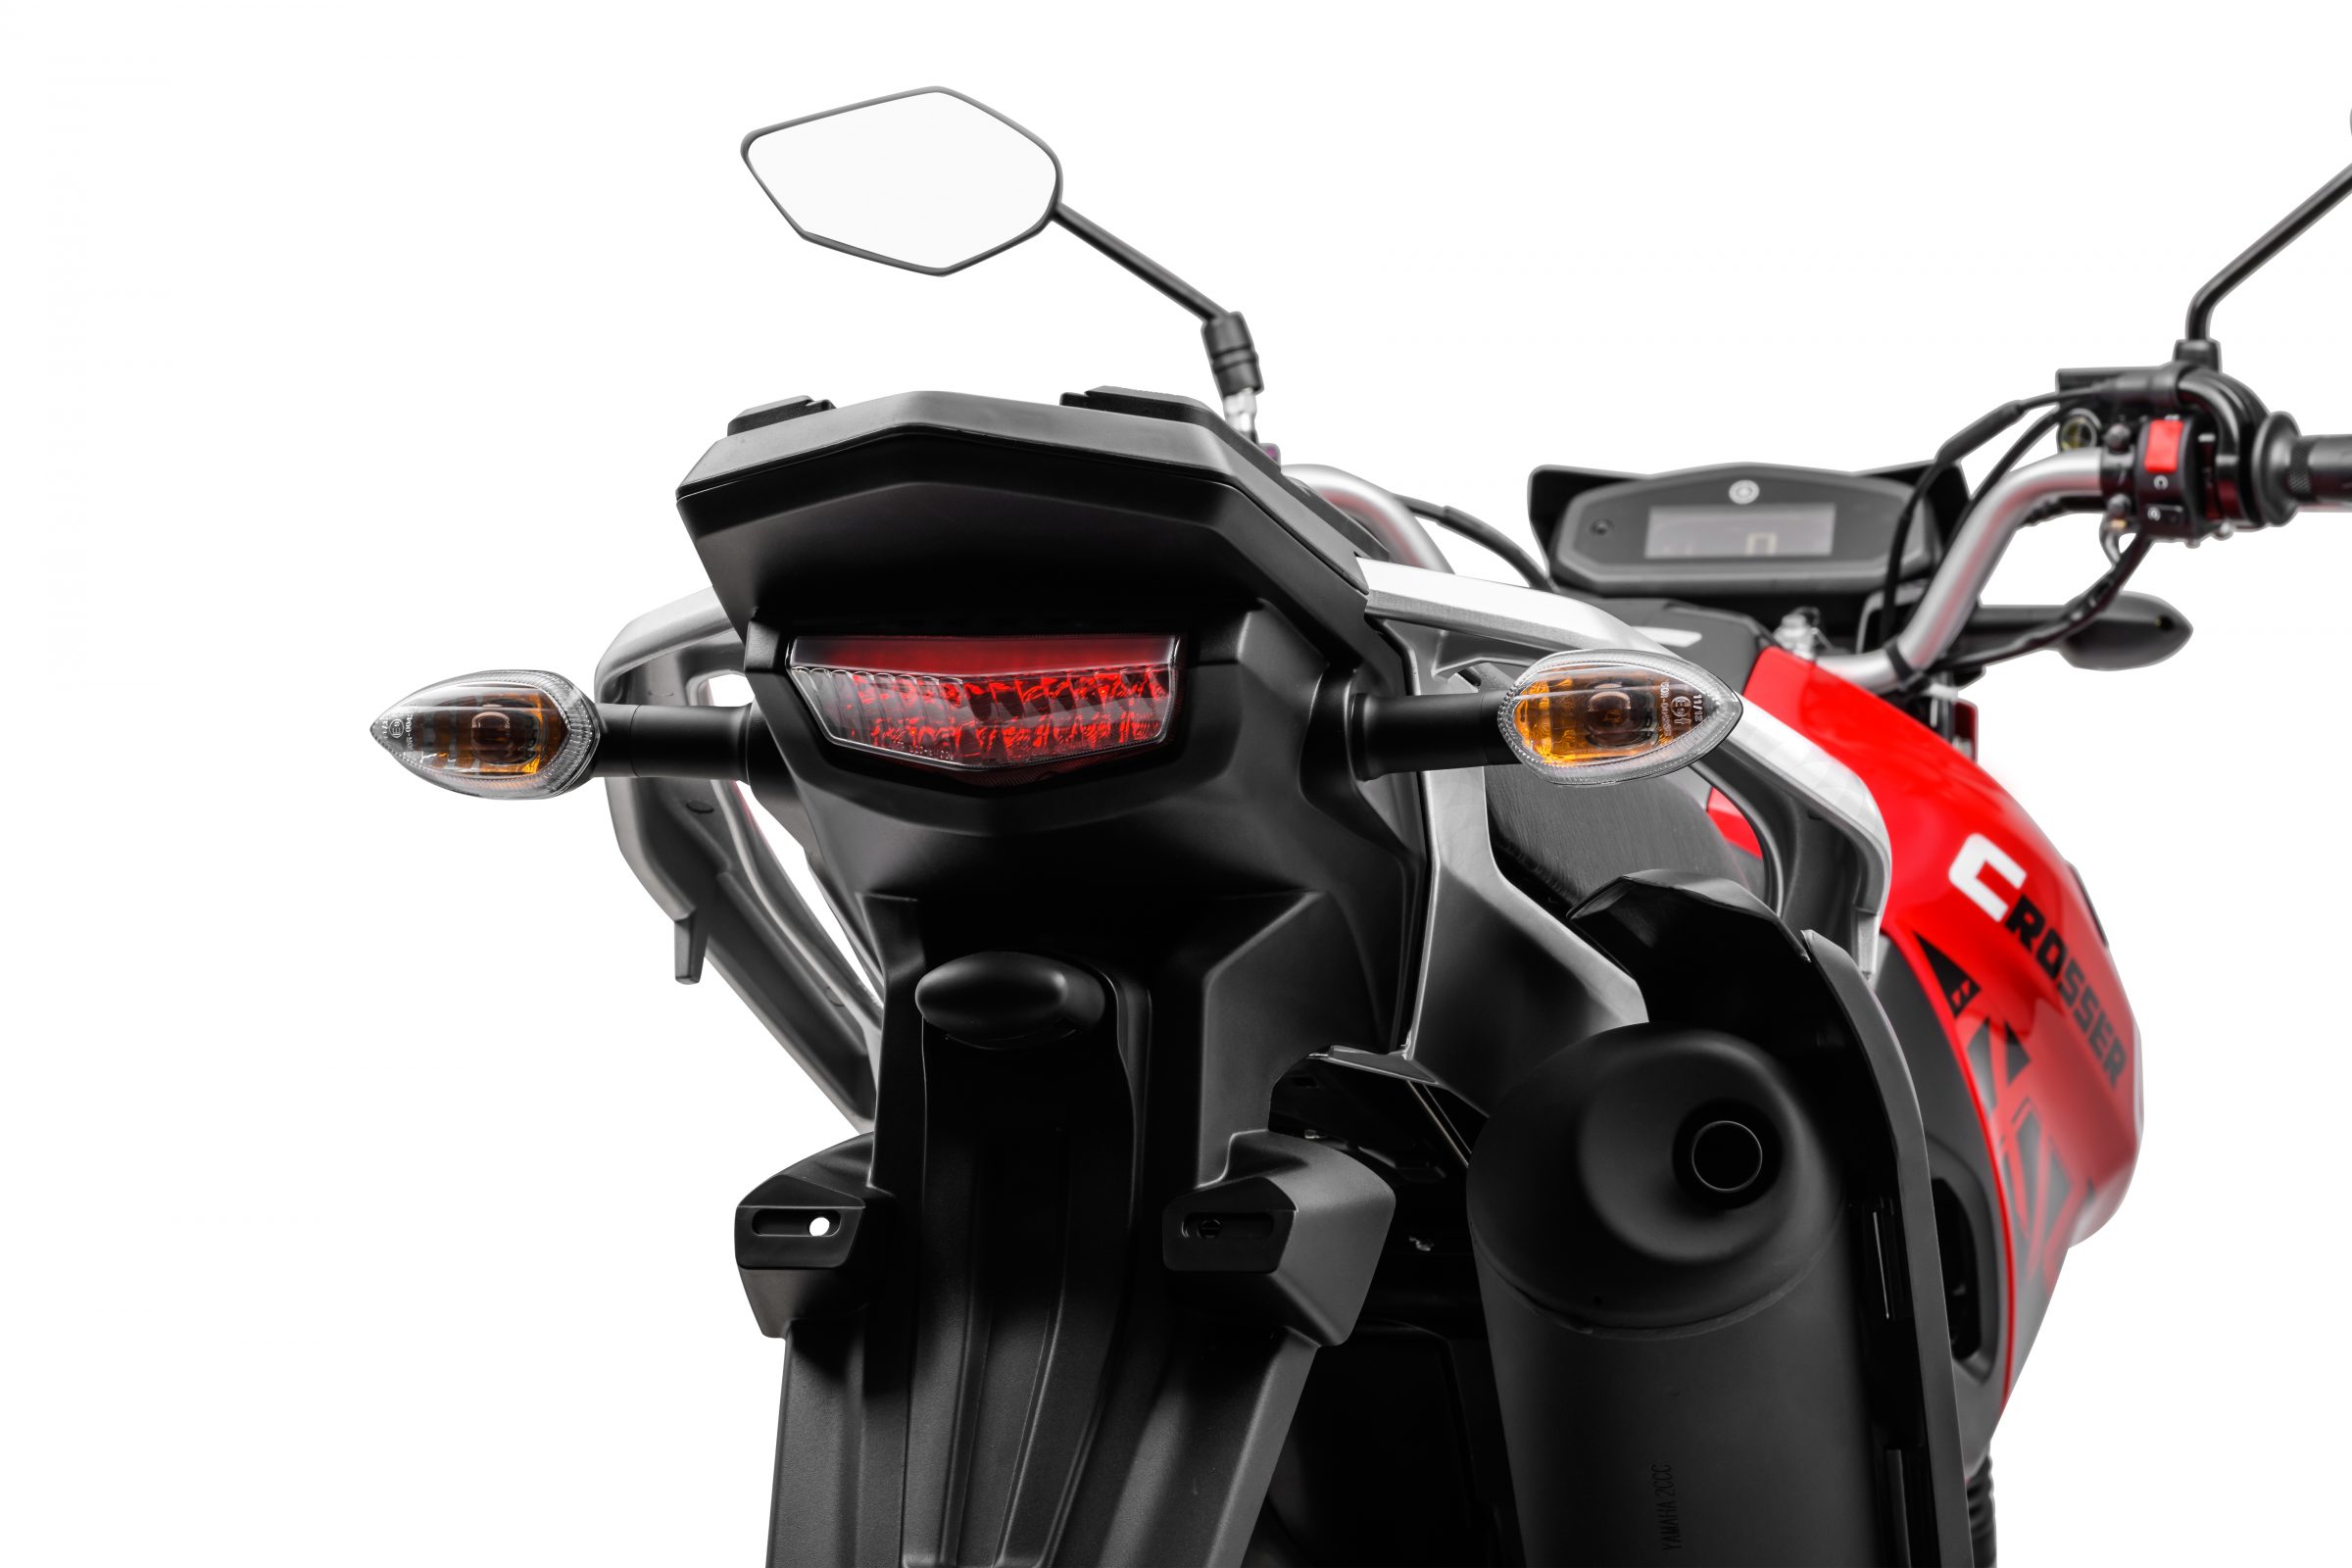 Teste: Yamaha Crosser 150 oferece uma mistura boa